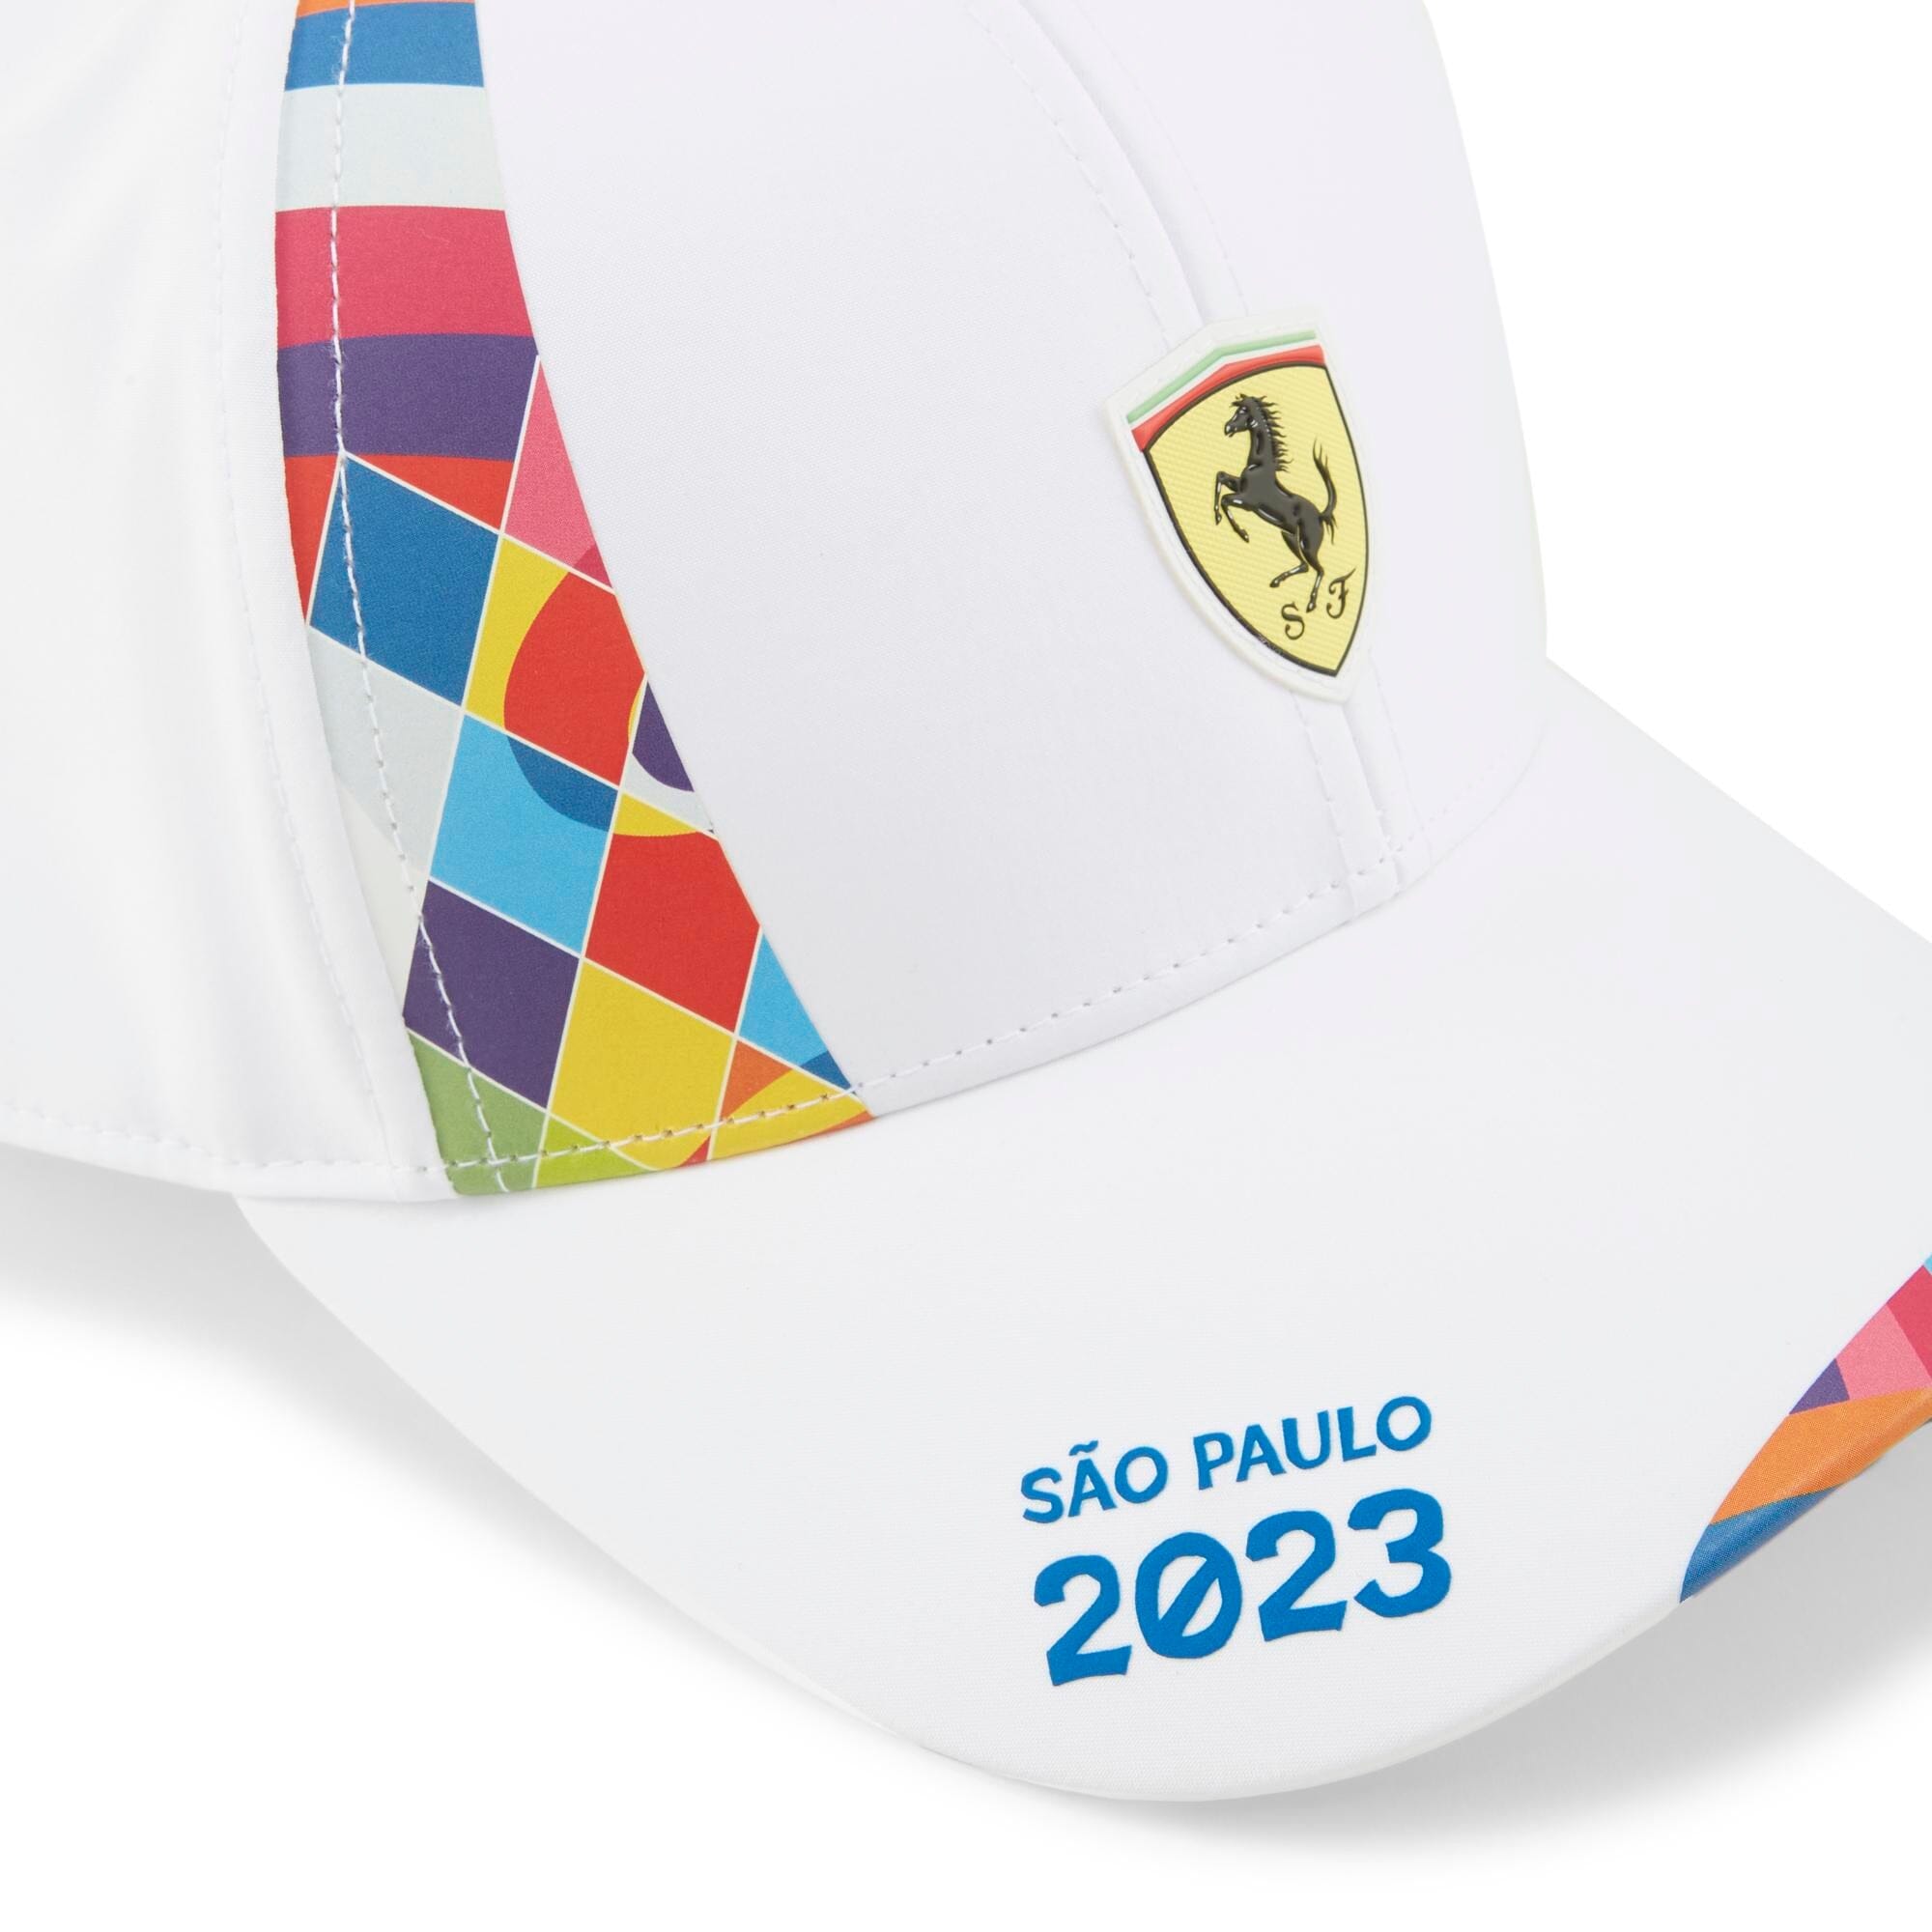 Scuderia Ferrari F1 2023 Special Edition Brazil GP Hat - White